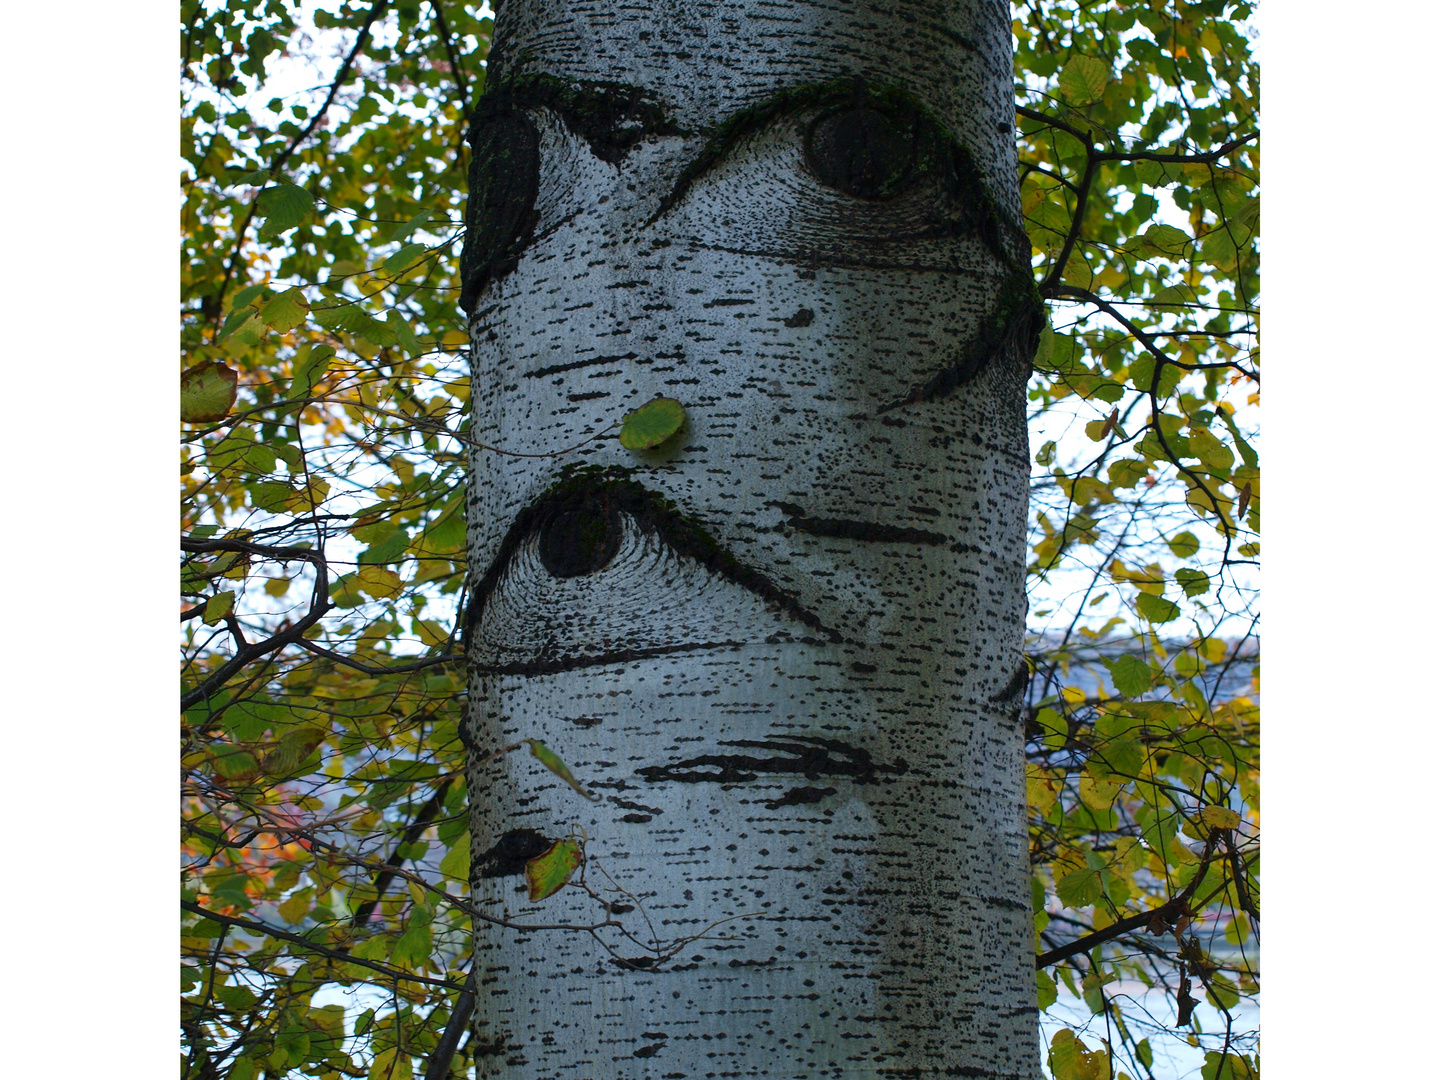 Ein Baum mit großen Augen